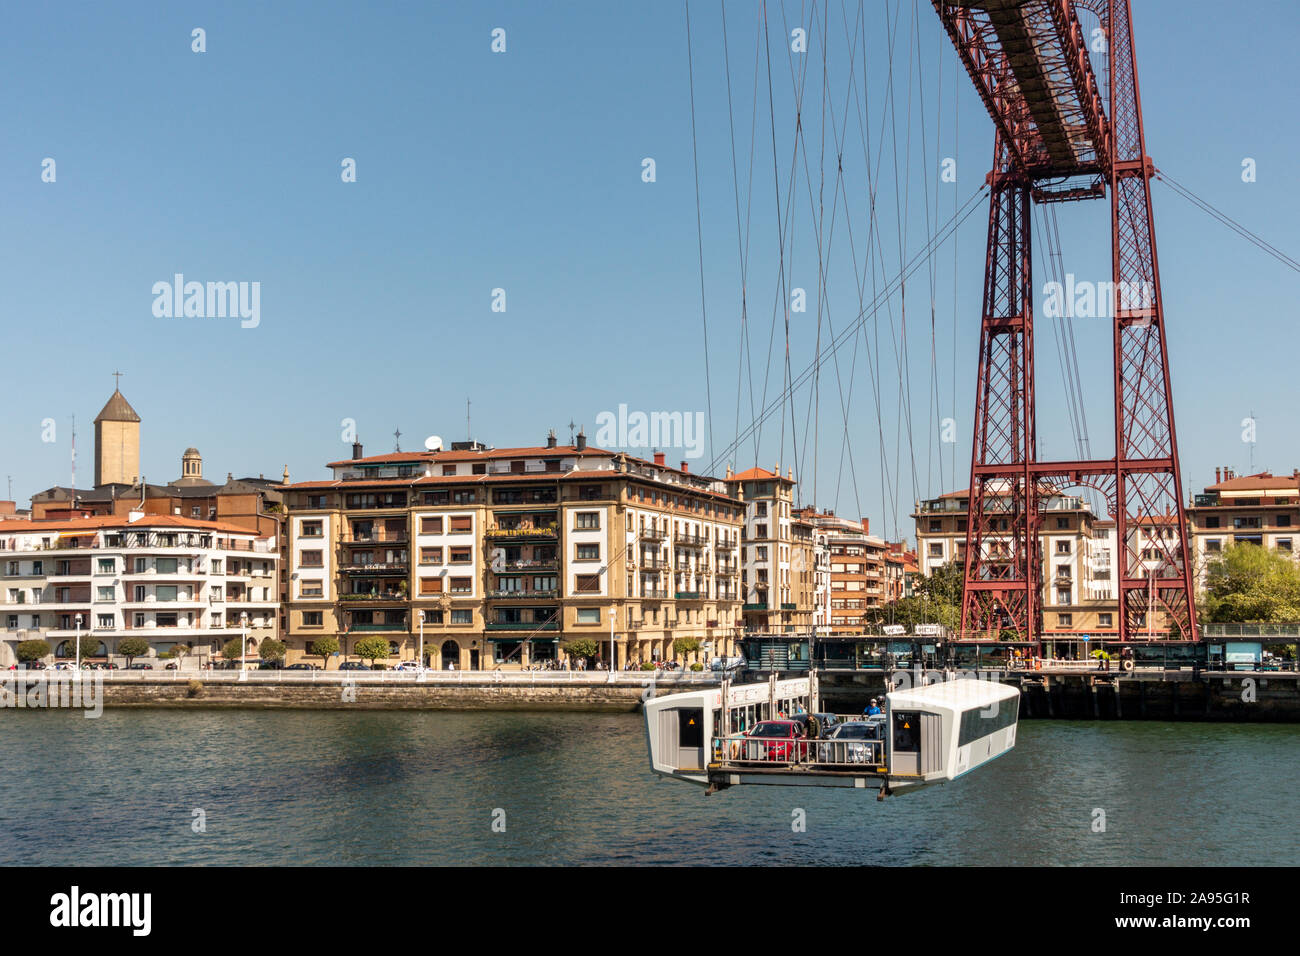 Puente de Vizcaya, pont Vizcaya, le plus ancien pont transbordeur, UNESCO World Heritage Site, Nervion, Bilbao, Bilbao, Espagne Banque D'Images